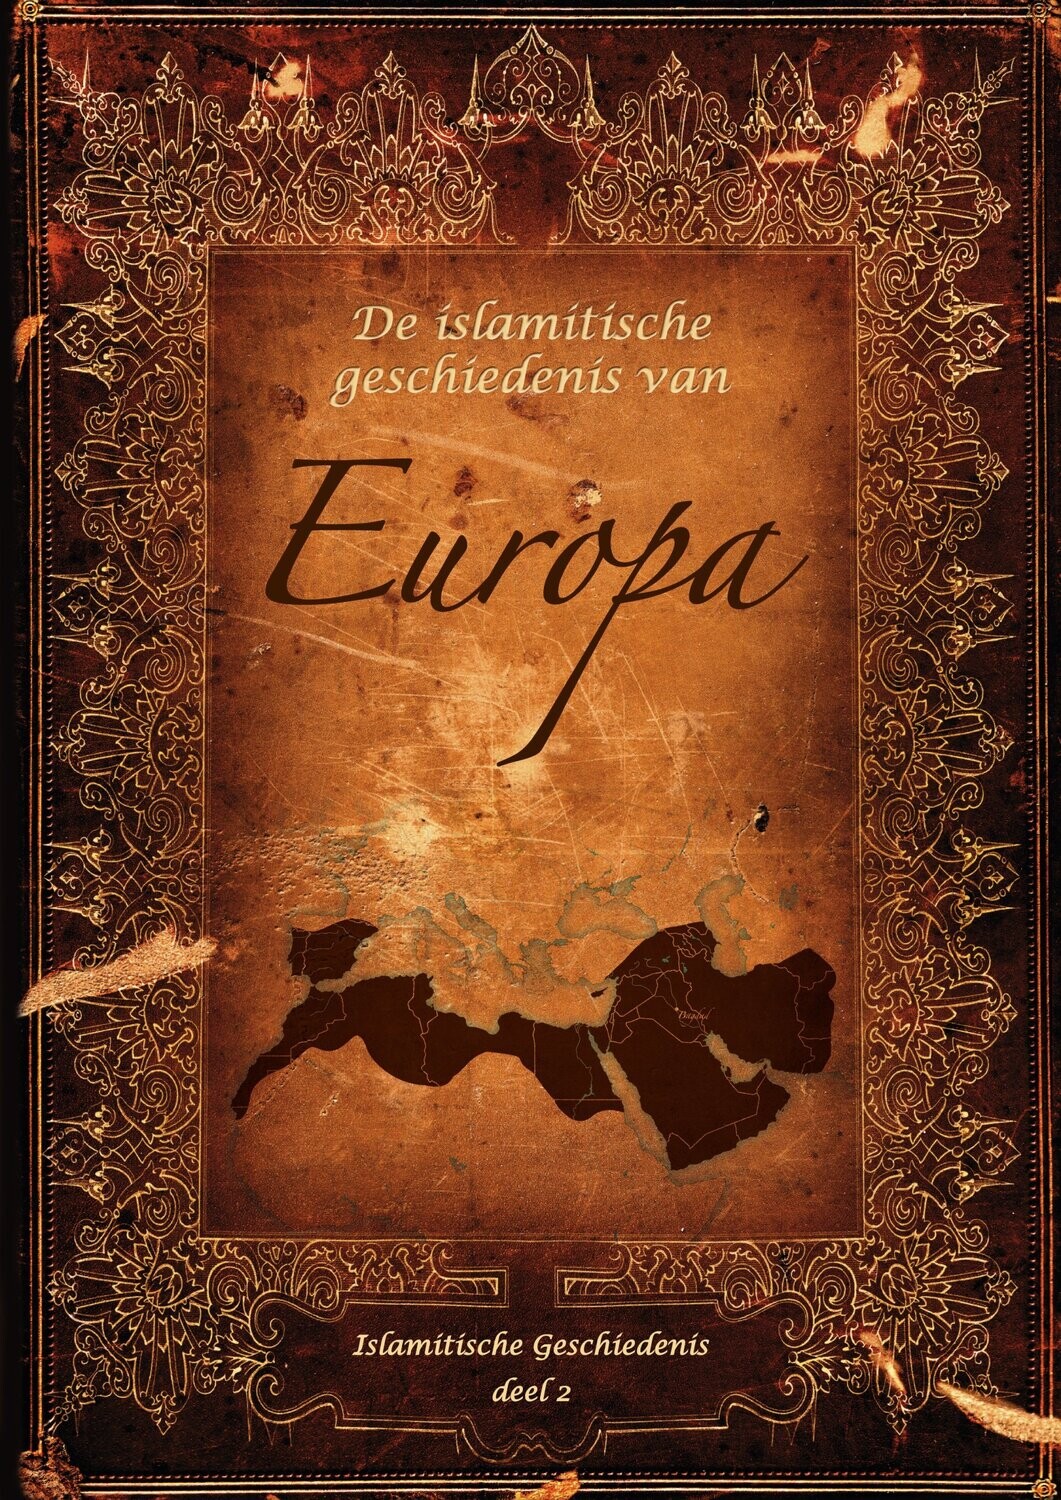 De islamitische geschiedenis van Europa